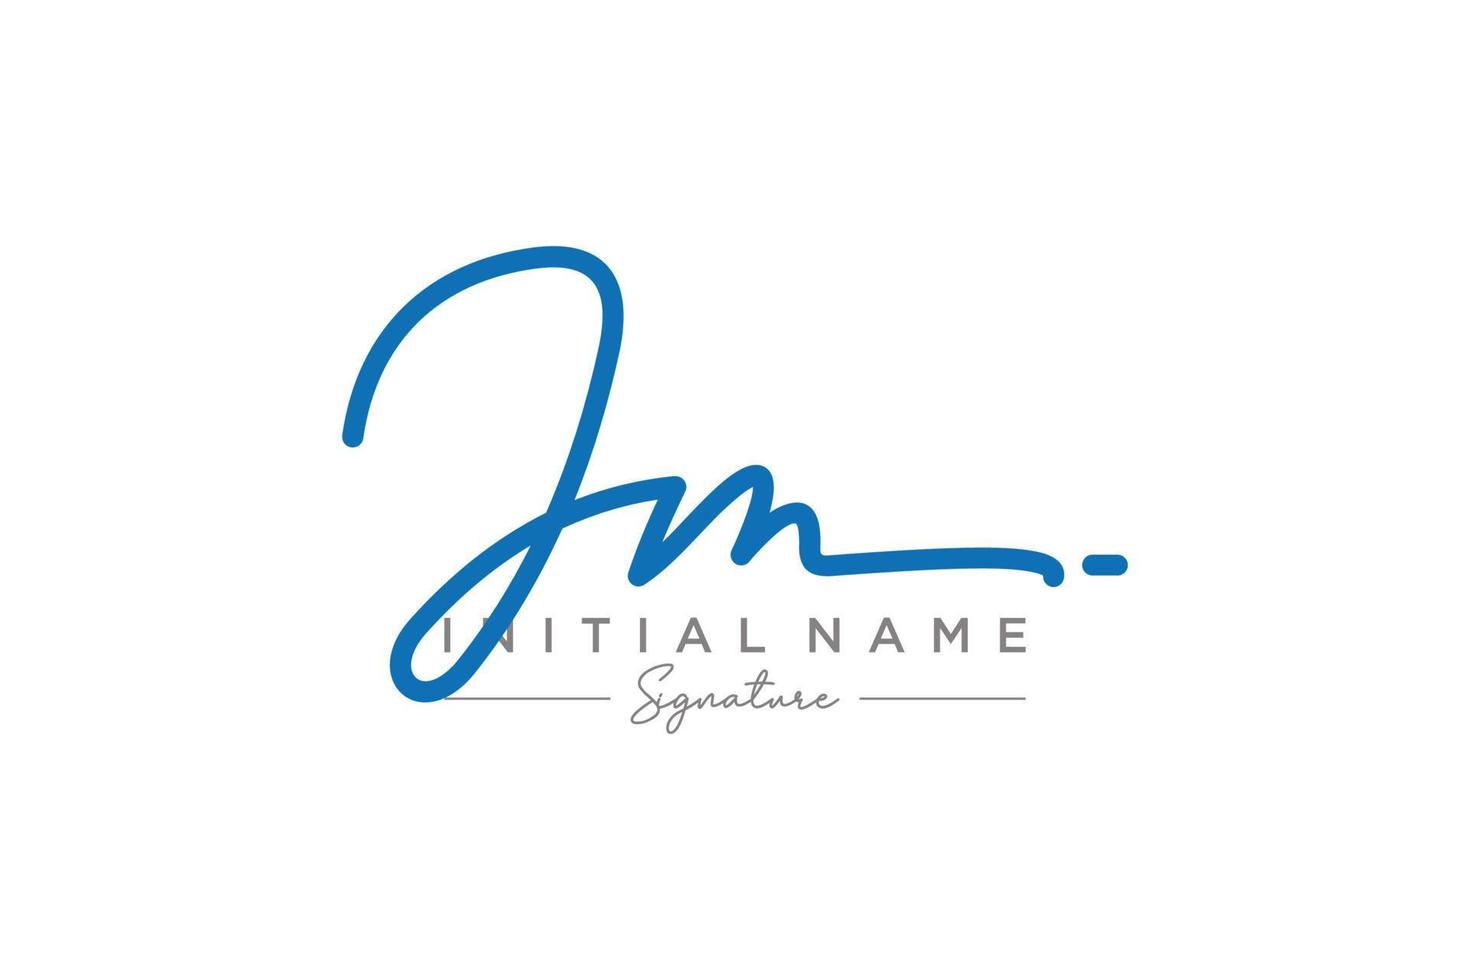 vector de plantilla de logotipo de firma jm inicial. ilustración de vector de letras de caligrafía dibujada a mano.